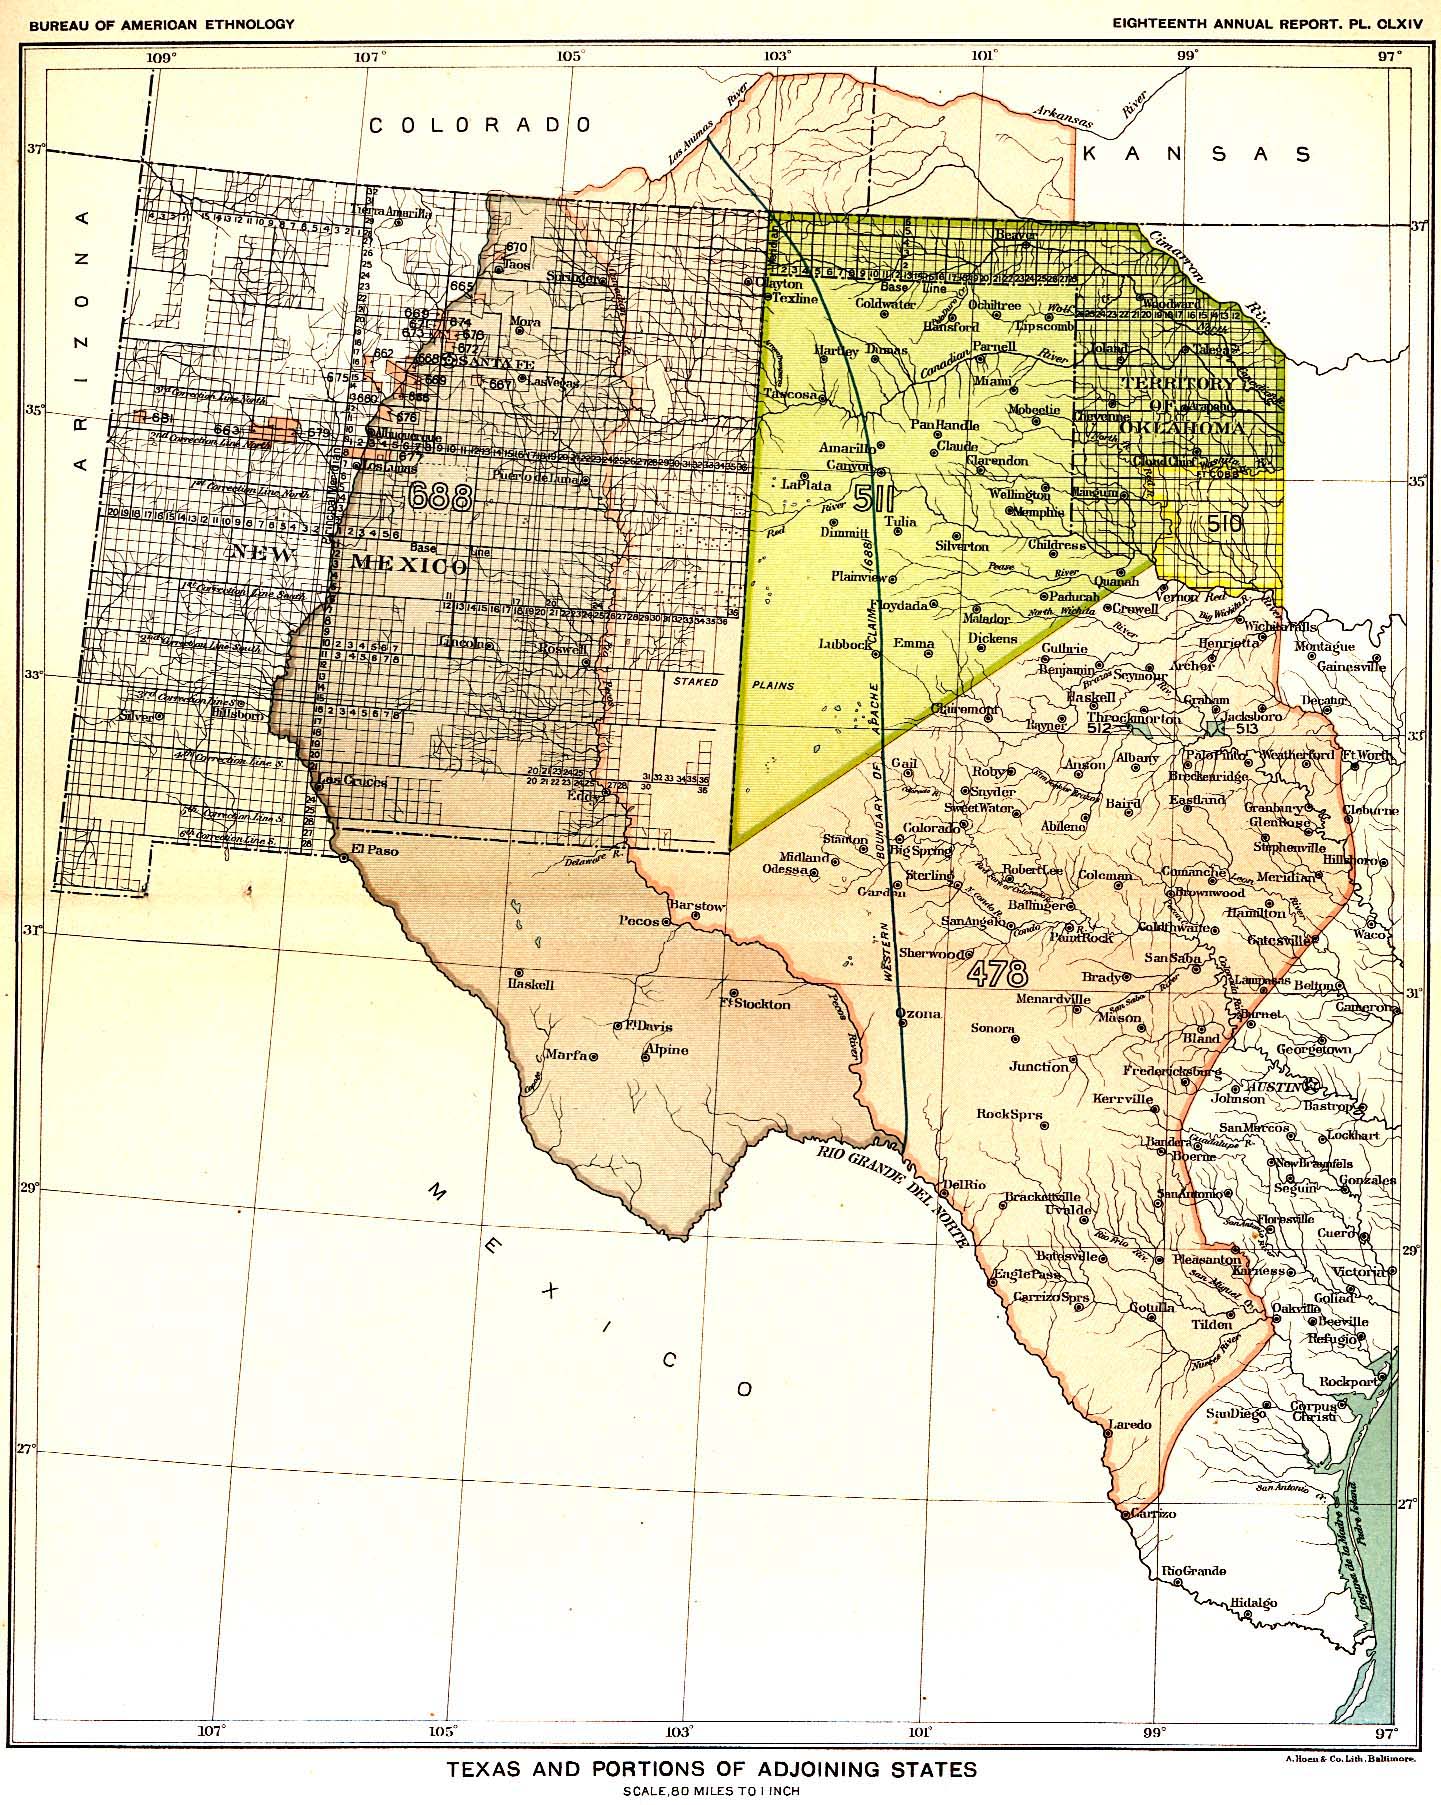 comanche territory map